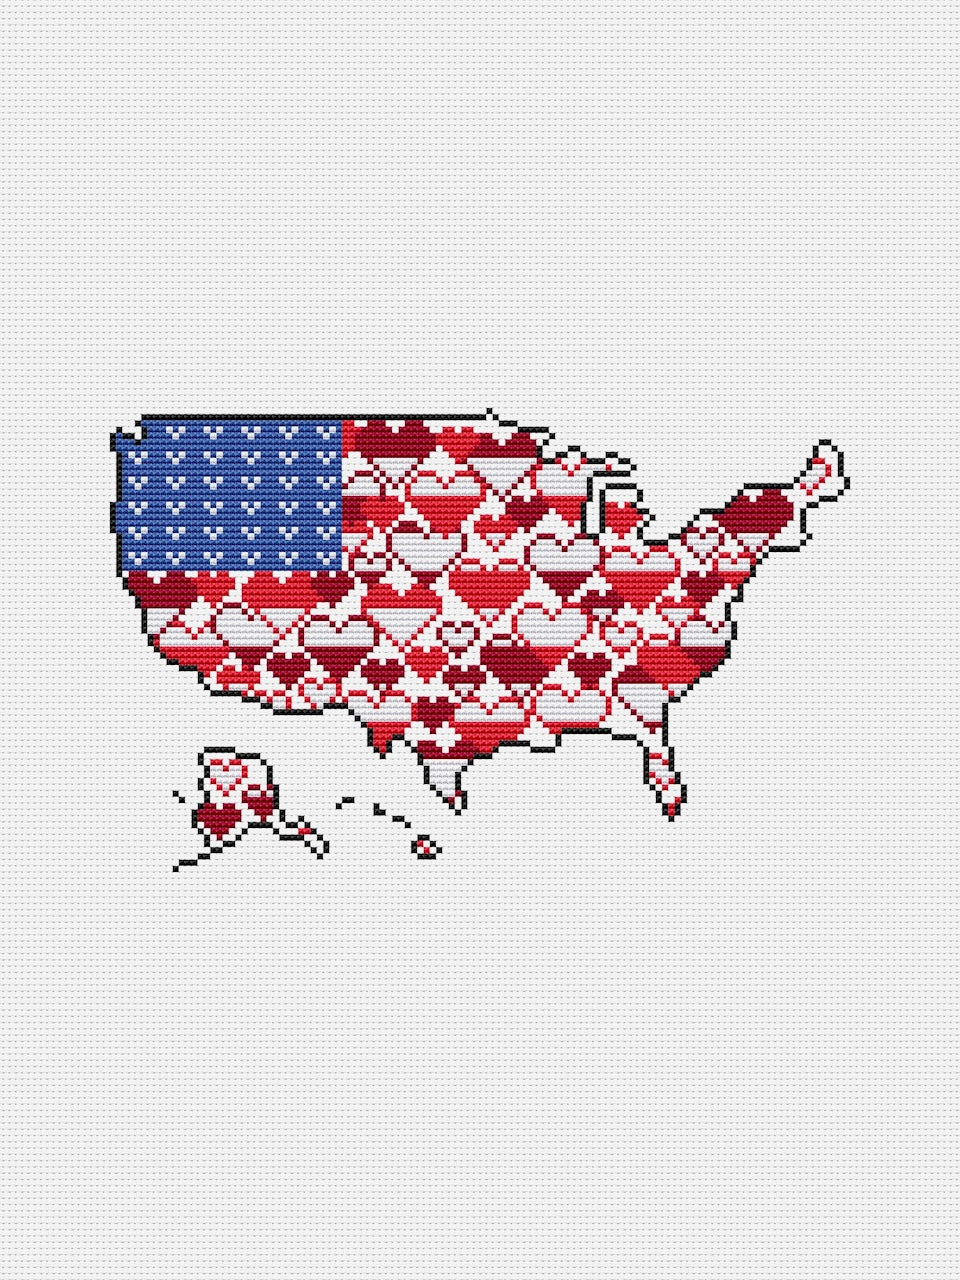 The United States of America, USA - free cross stitch pattern